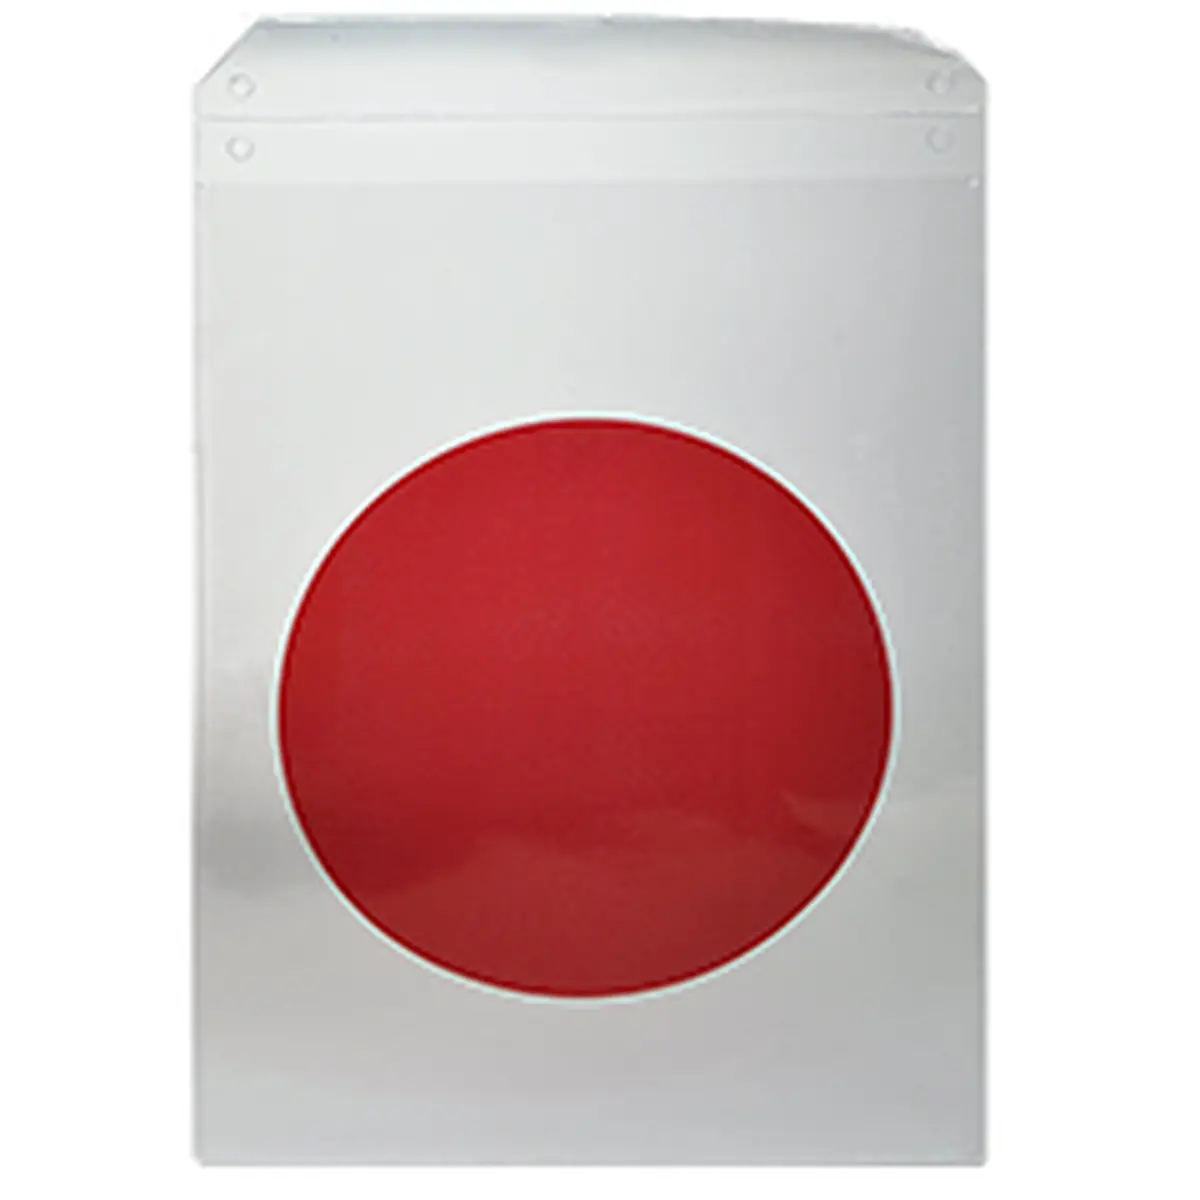 Formulare und Vordrucke Plastikhülle Roter Punkt, Schutzhülle für Bautafel, 220 x 320 mm, mit Lasche, 40 Stück für Bürobedarf